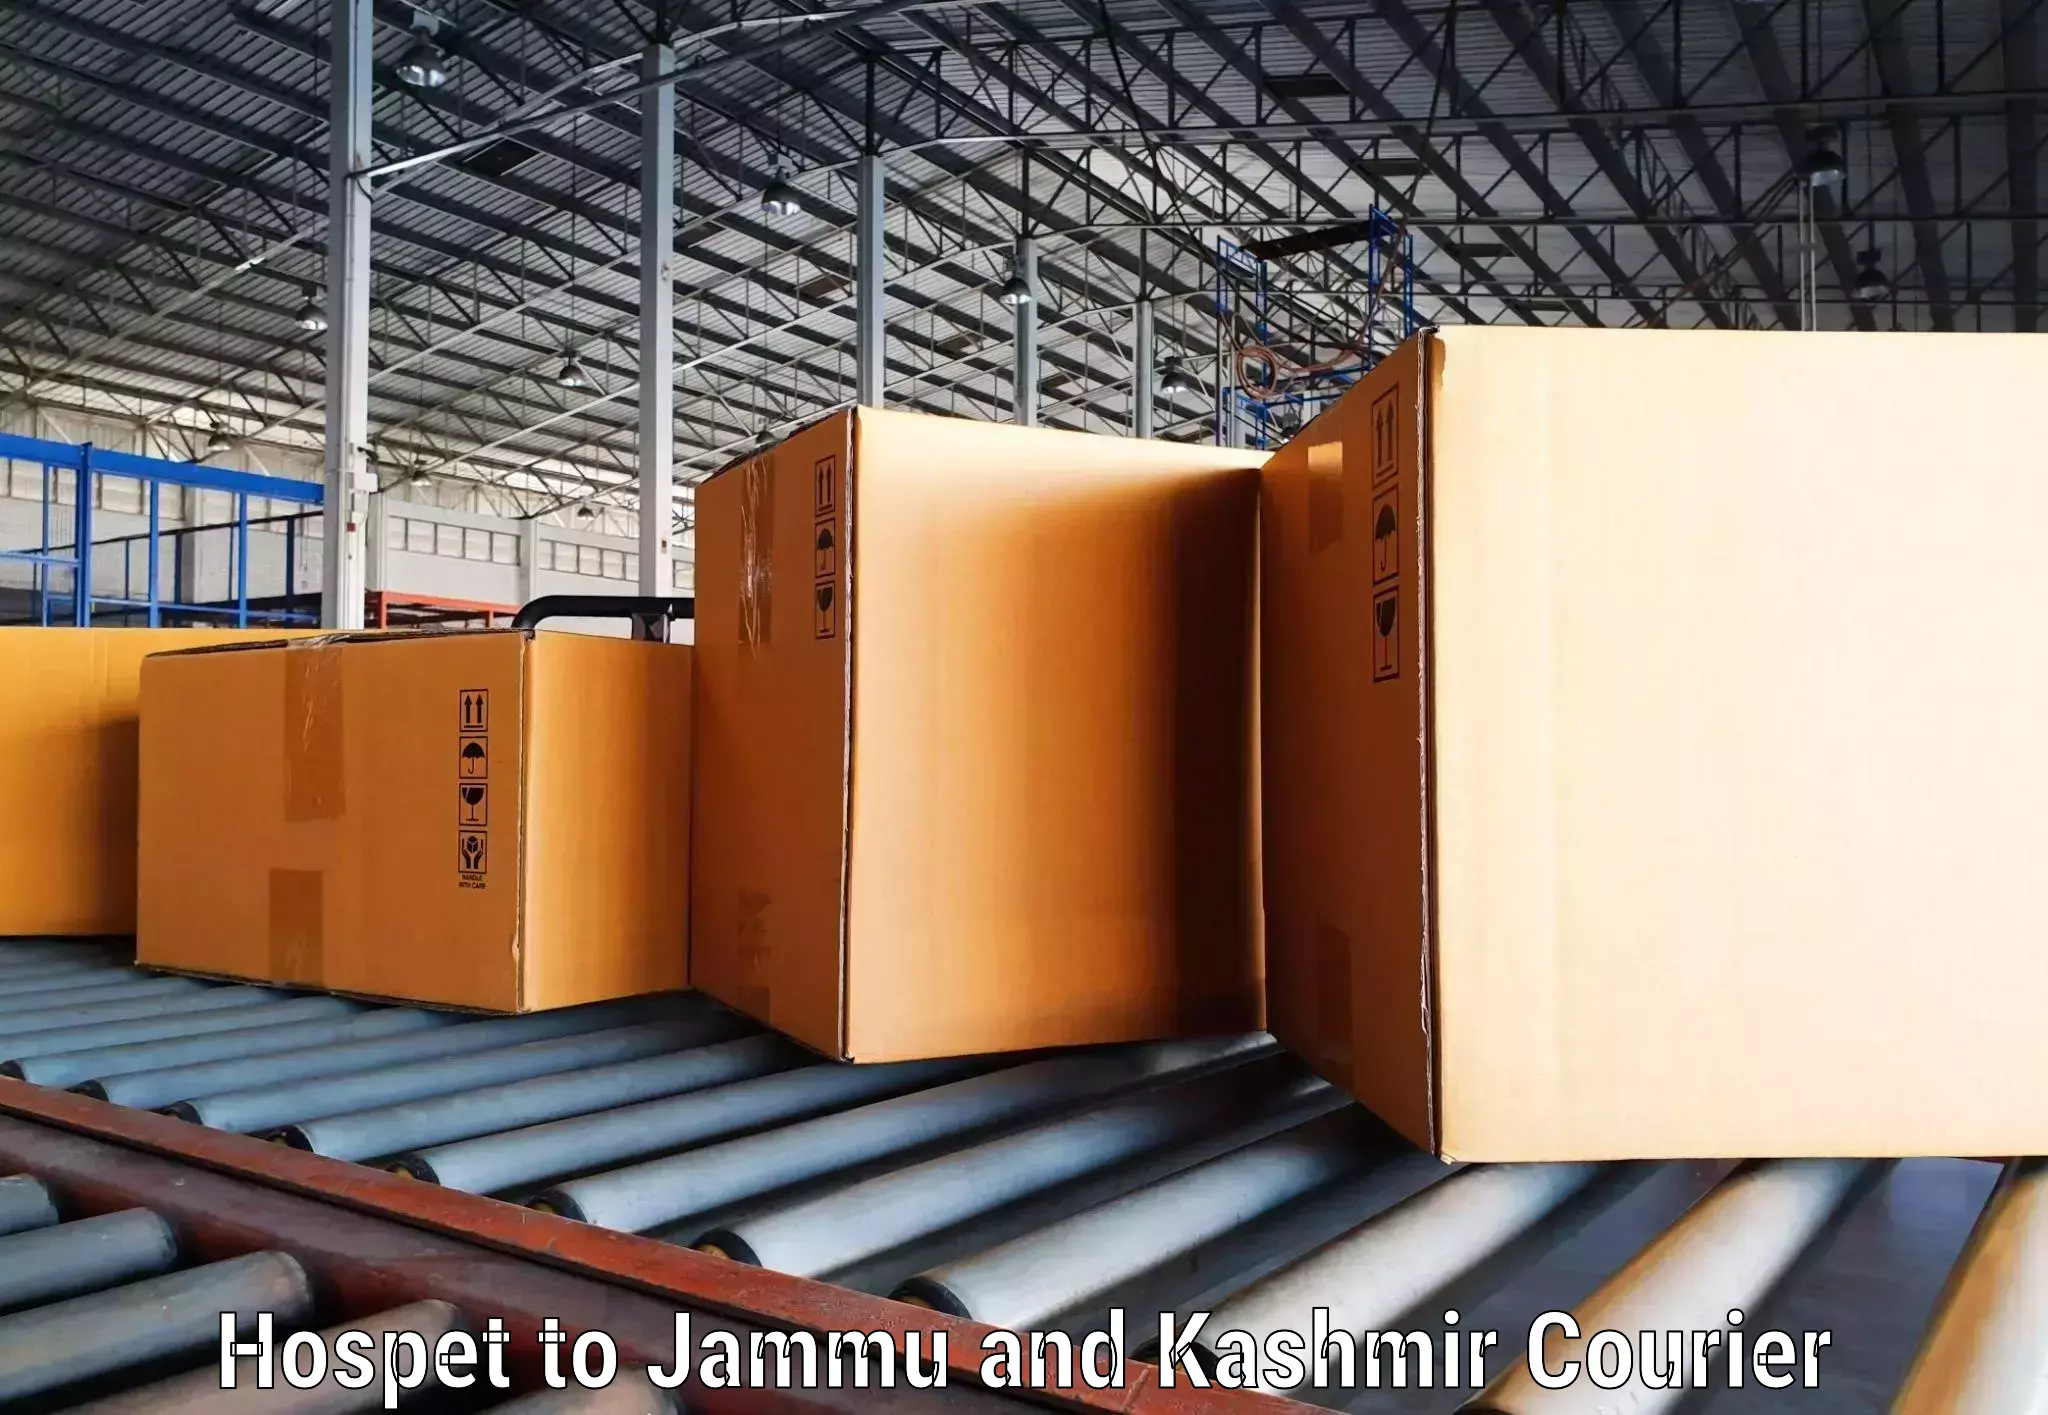 Reliable parcel services Hospet to University of Kashmir Srinagar